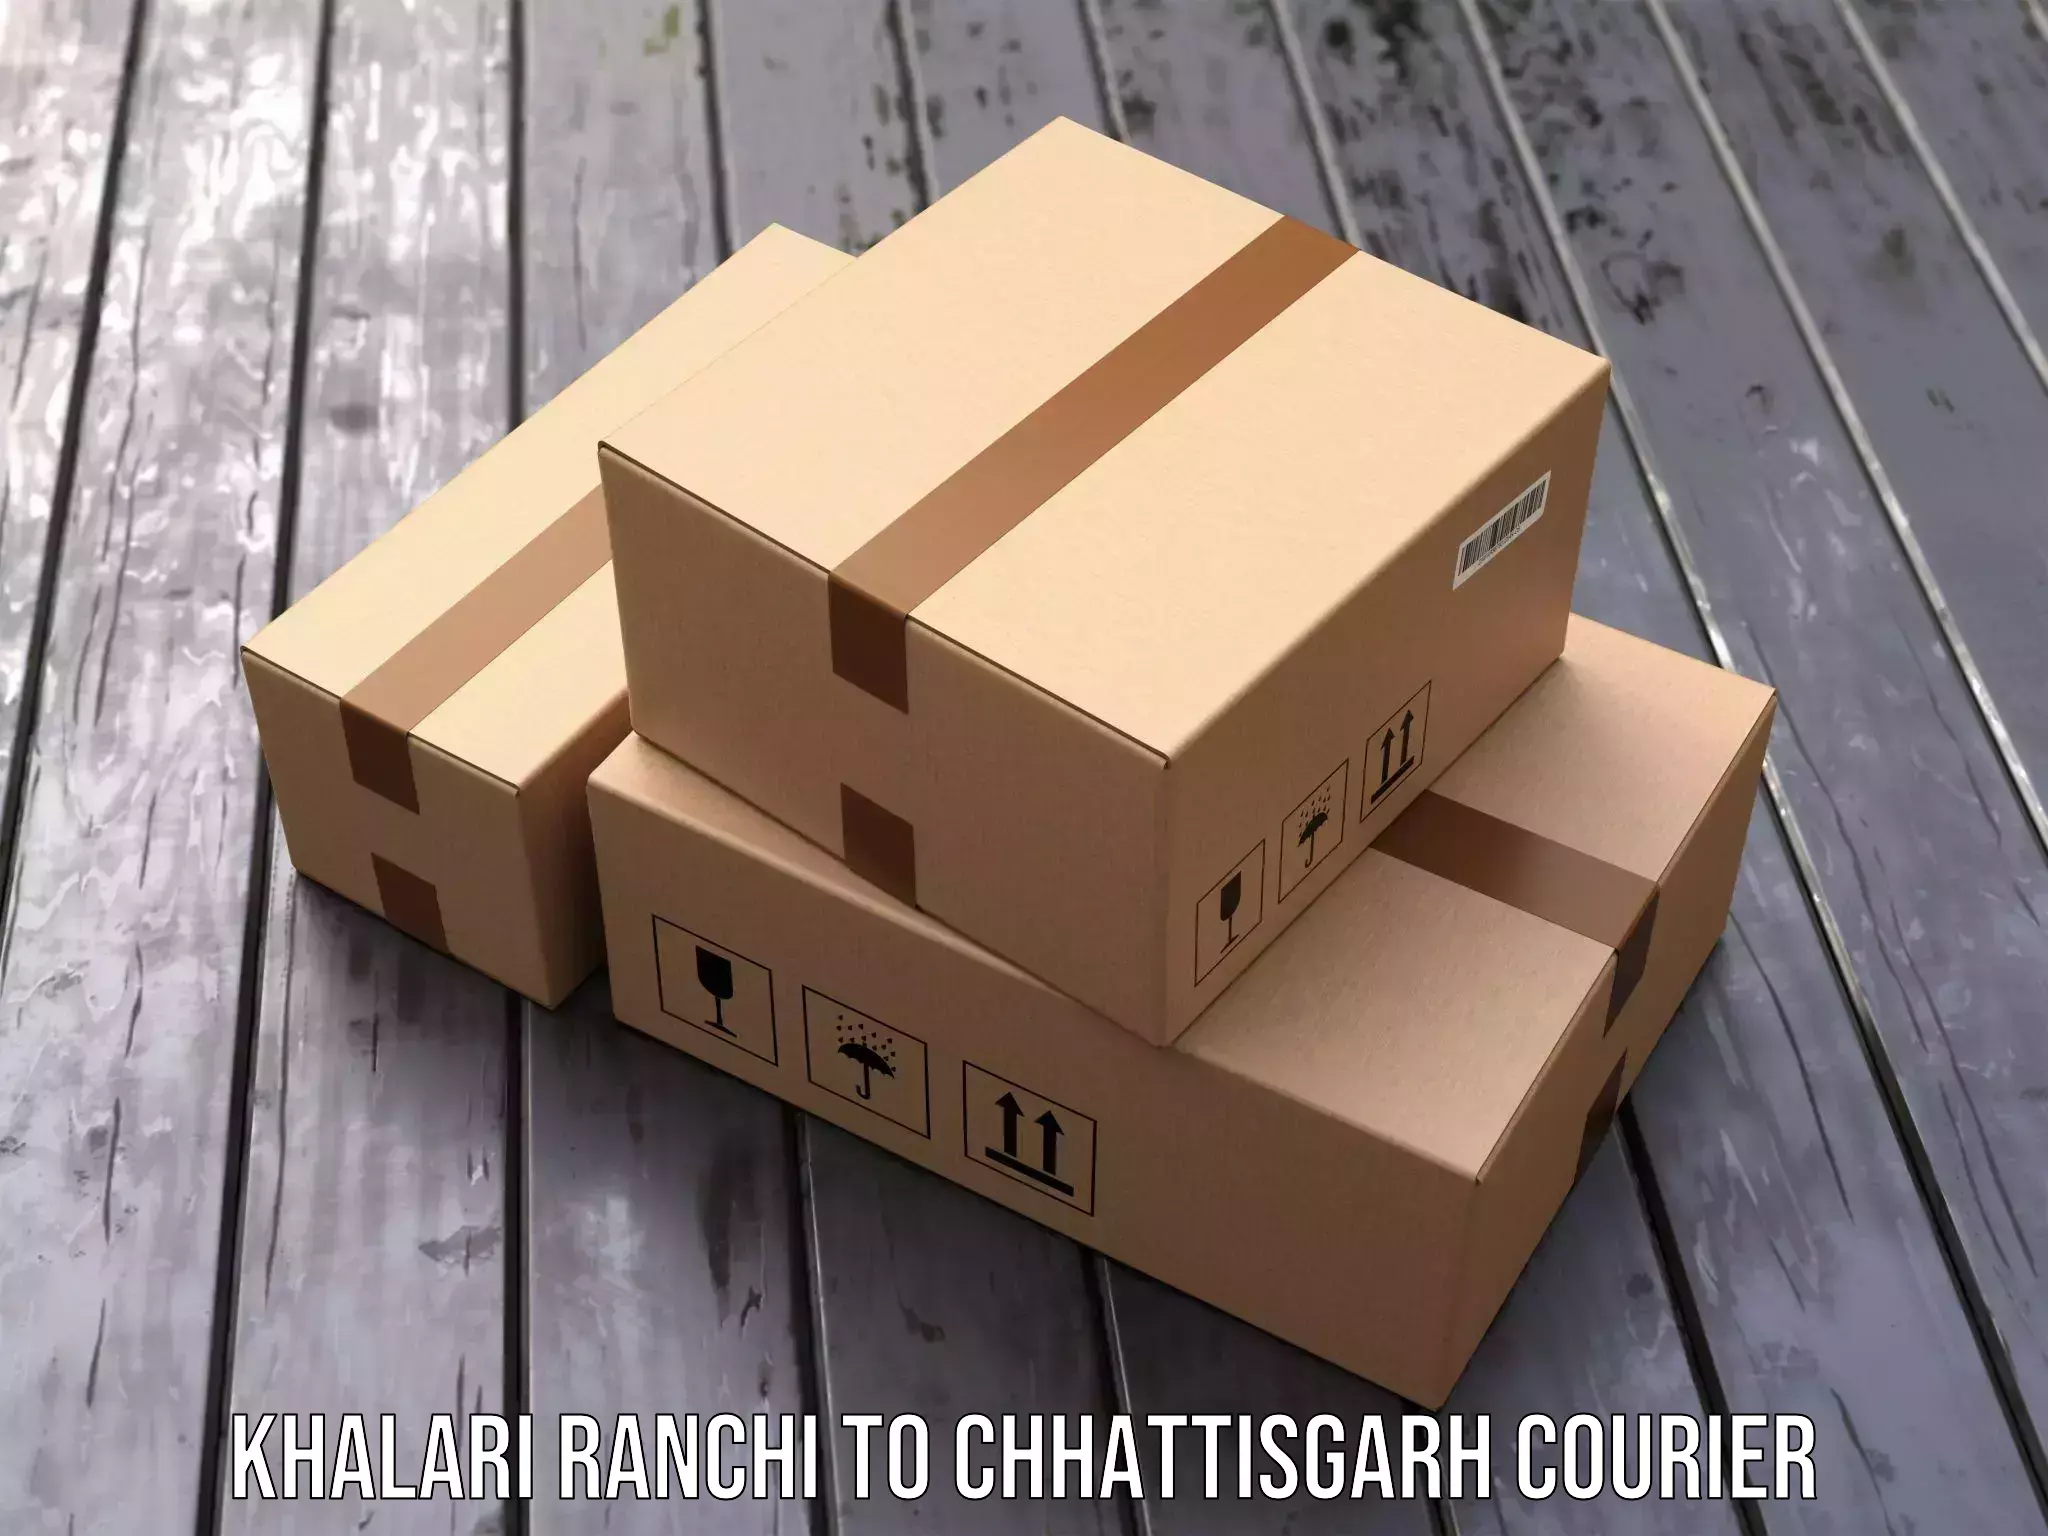 Global shipping networks Khalari Ranchi to Bijapur Chhattisgarh